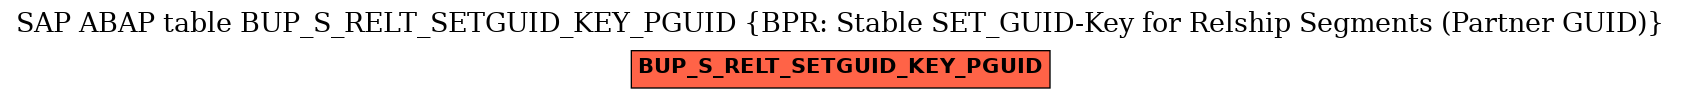 E-R Diagram for table BUP_S_RELT_SETGUID_KEY_PGUID (BPR: Stable SET_GUID-Key for Relship Segments (Partner GUID))